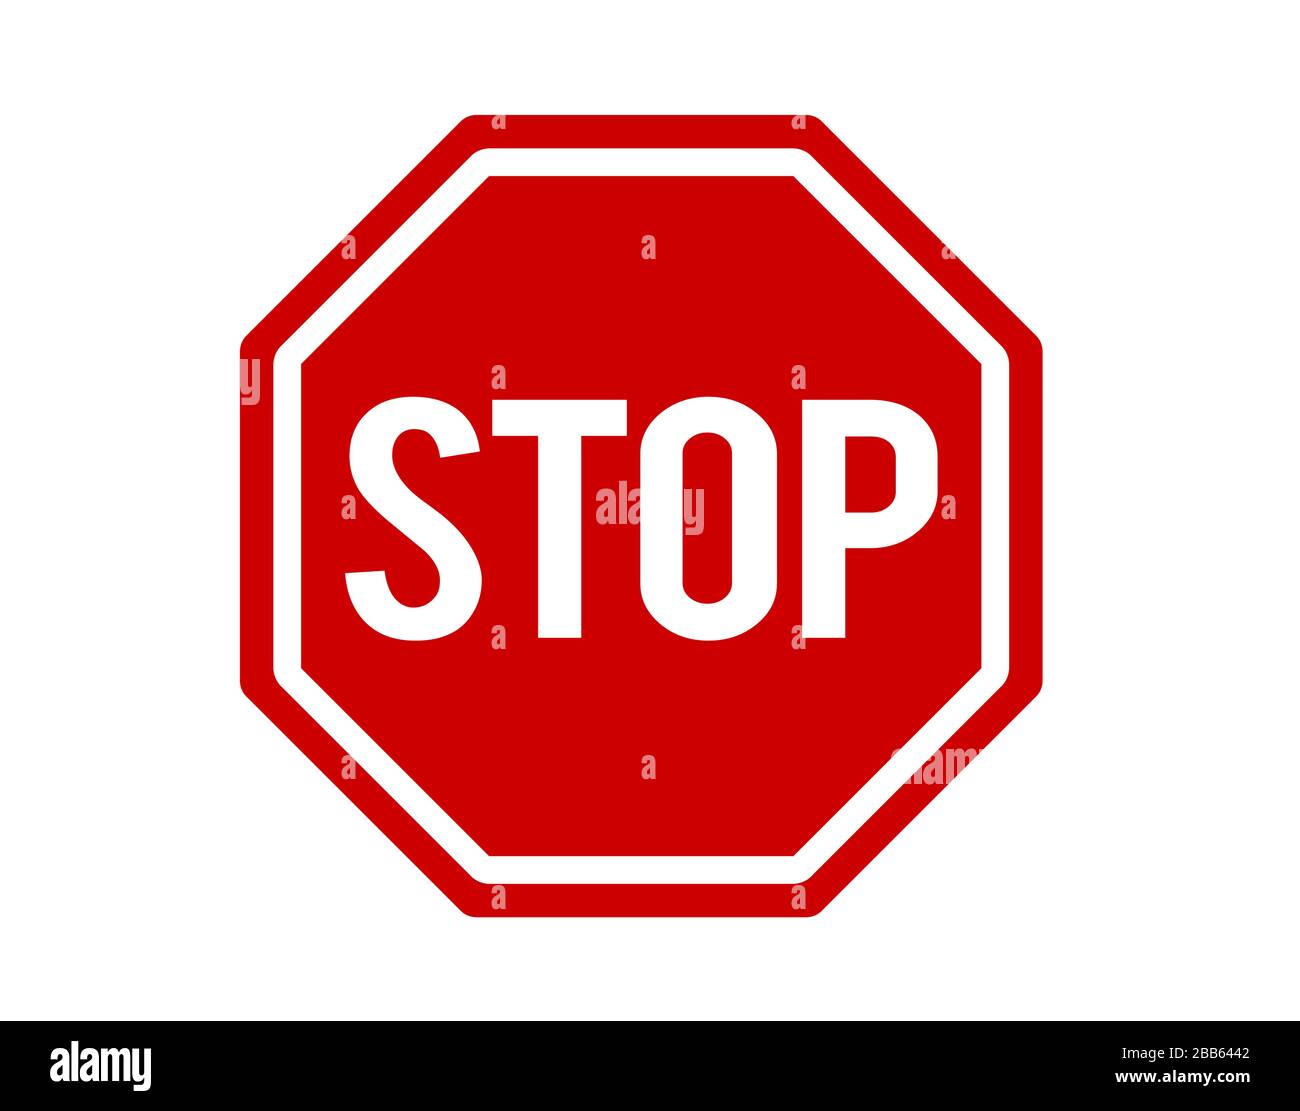 Das Vektor-Format des roten Stopp-Warnzeichens für das flache Symbol für das Straßensymbol Stock Vektor